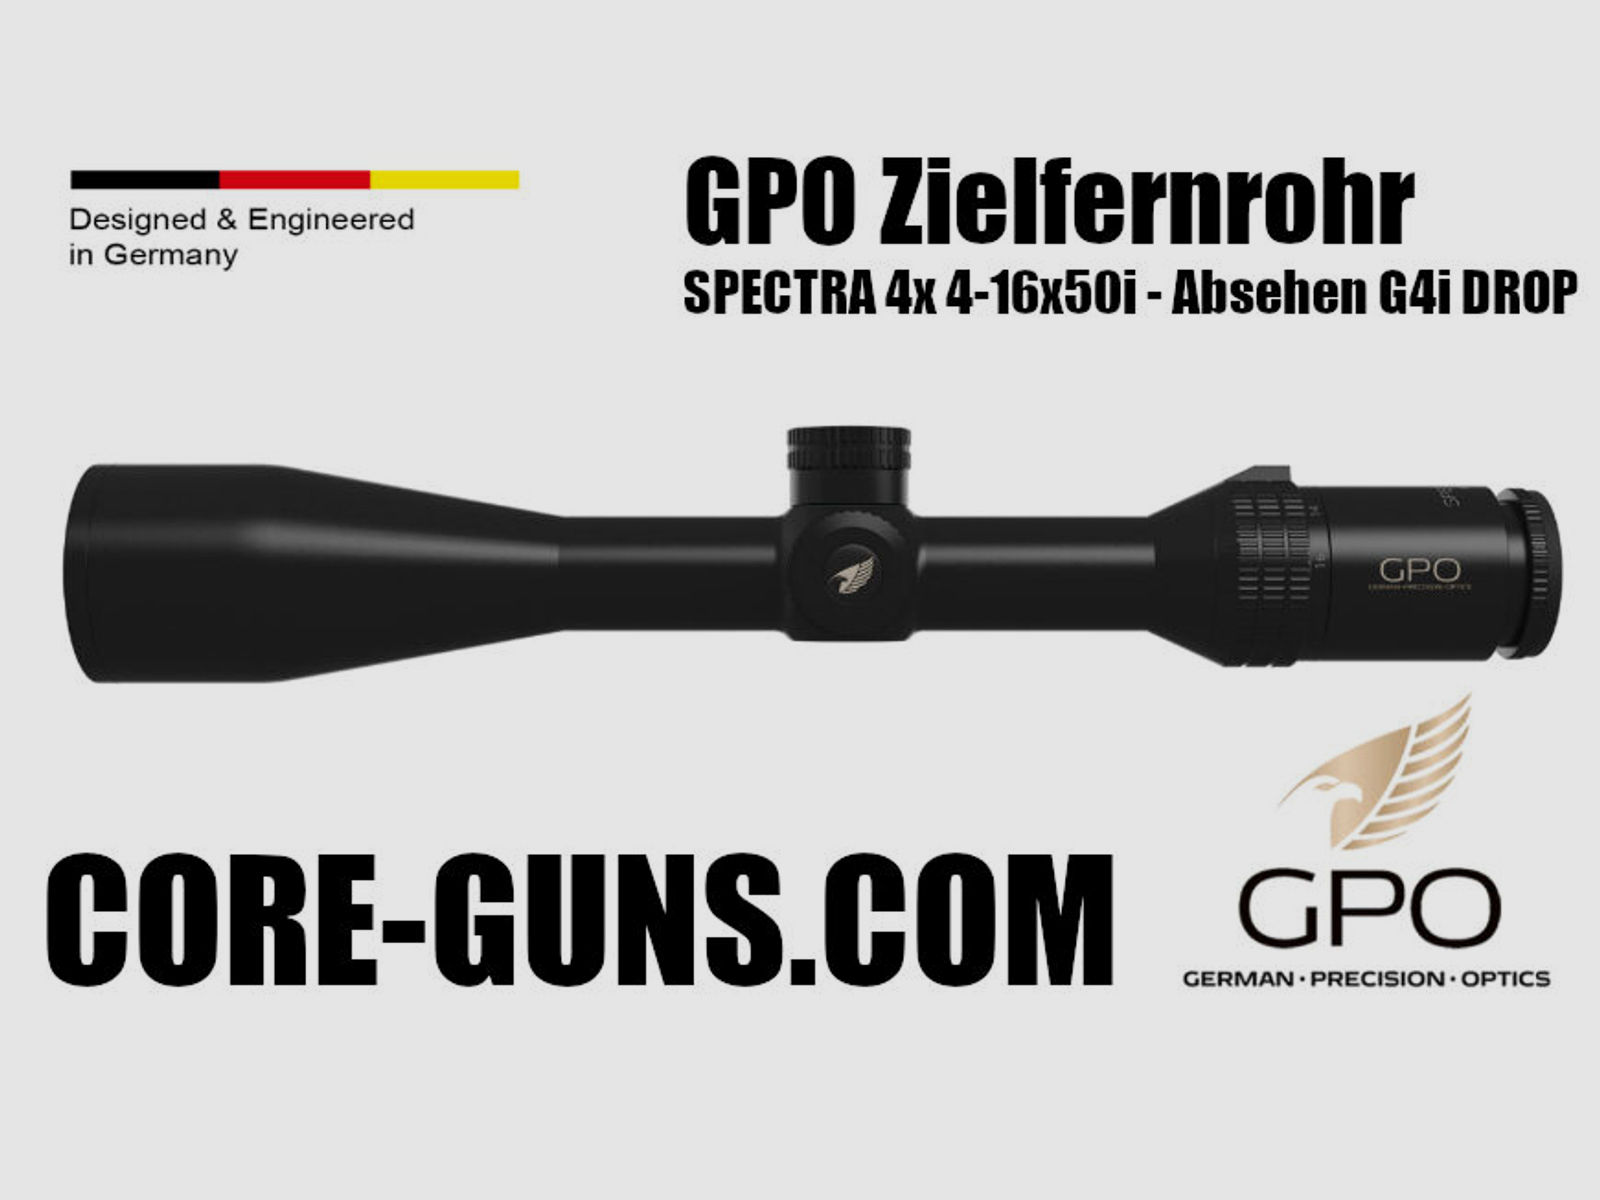 GPO Zielfernrohr SPECTRA 4-16x50i - Absehen G4i DROP	 German Precision Optics GPO ZF - UVP: 679€